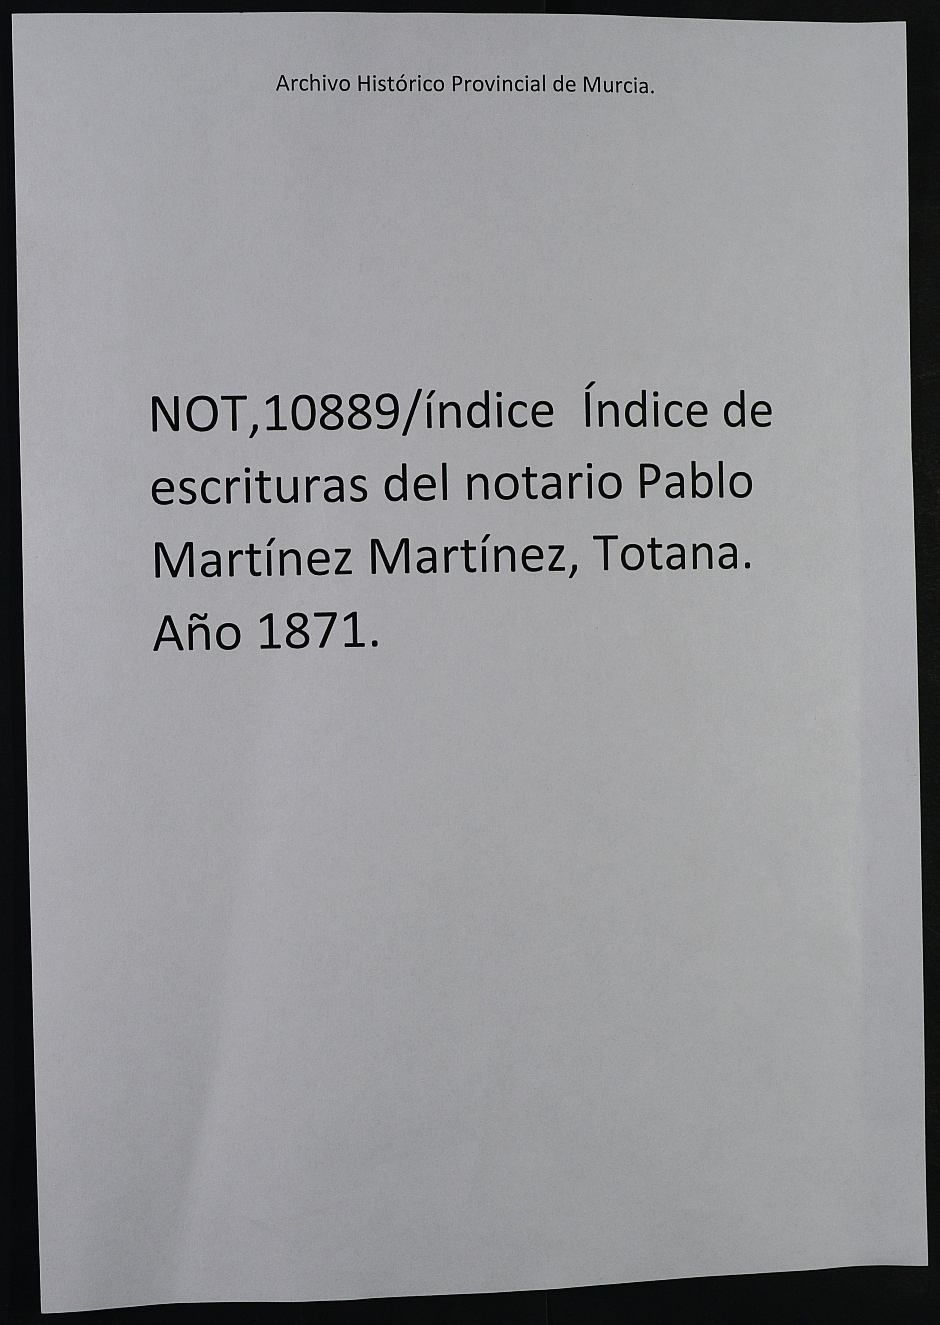 Índice de escrituras del notario Pablo Martínez Martínez, Totana. Año 1871.